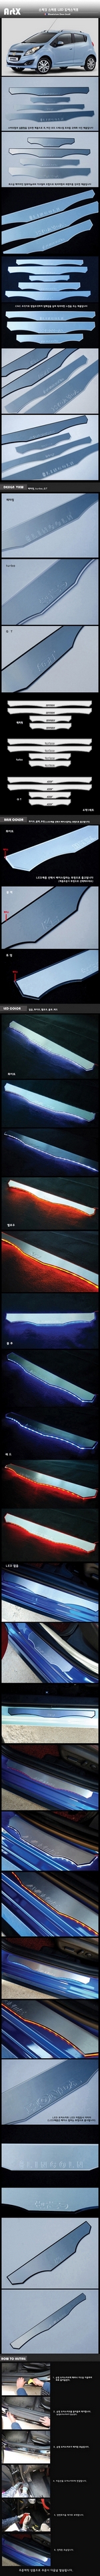 Накладки на пороги алюминиевые с подсветкой (вариант 1) ArtX Chevrolet Spark 2009-2019